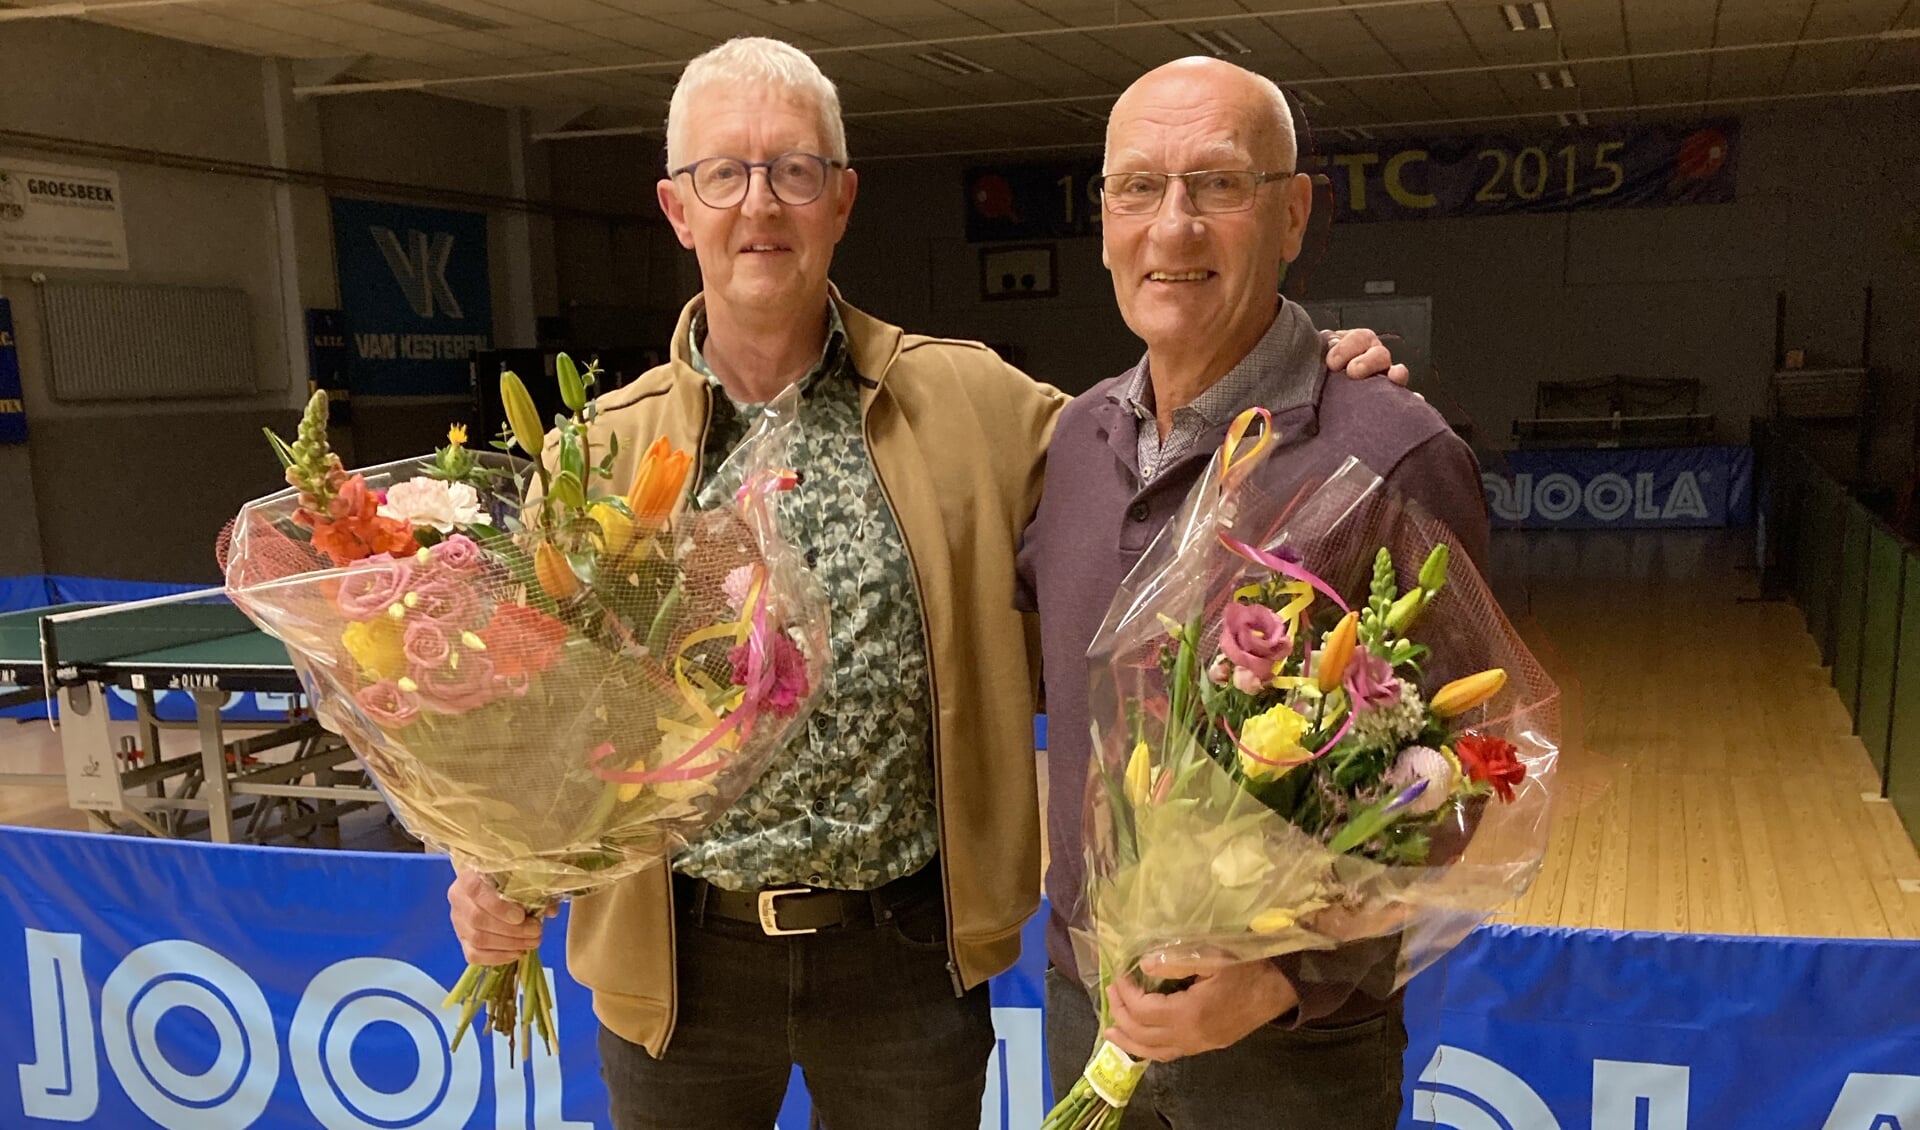 Links Hennie Cillessen, 25 jaar lid en rechts Paul van den Boogaard 40 jaar lid van GGTC Groesbeek. (foto: GTTC Groesbeek)